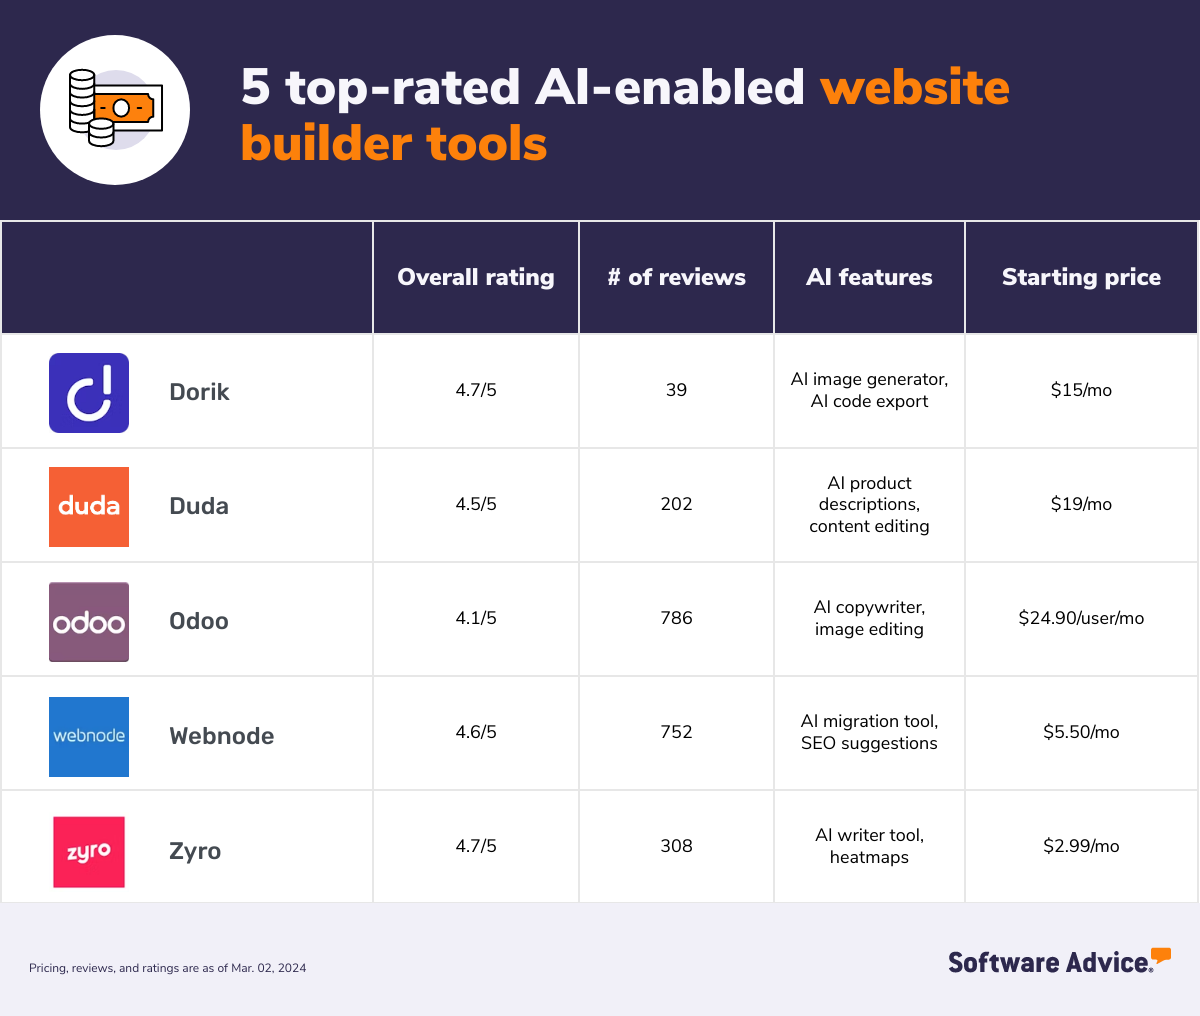 Graphic showing 5 top-rated AI website builder tools: Dorik, Duda, Odoo, Webnode, and Zyro